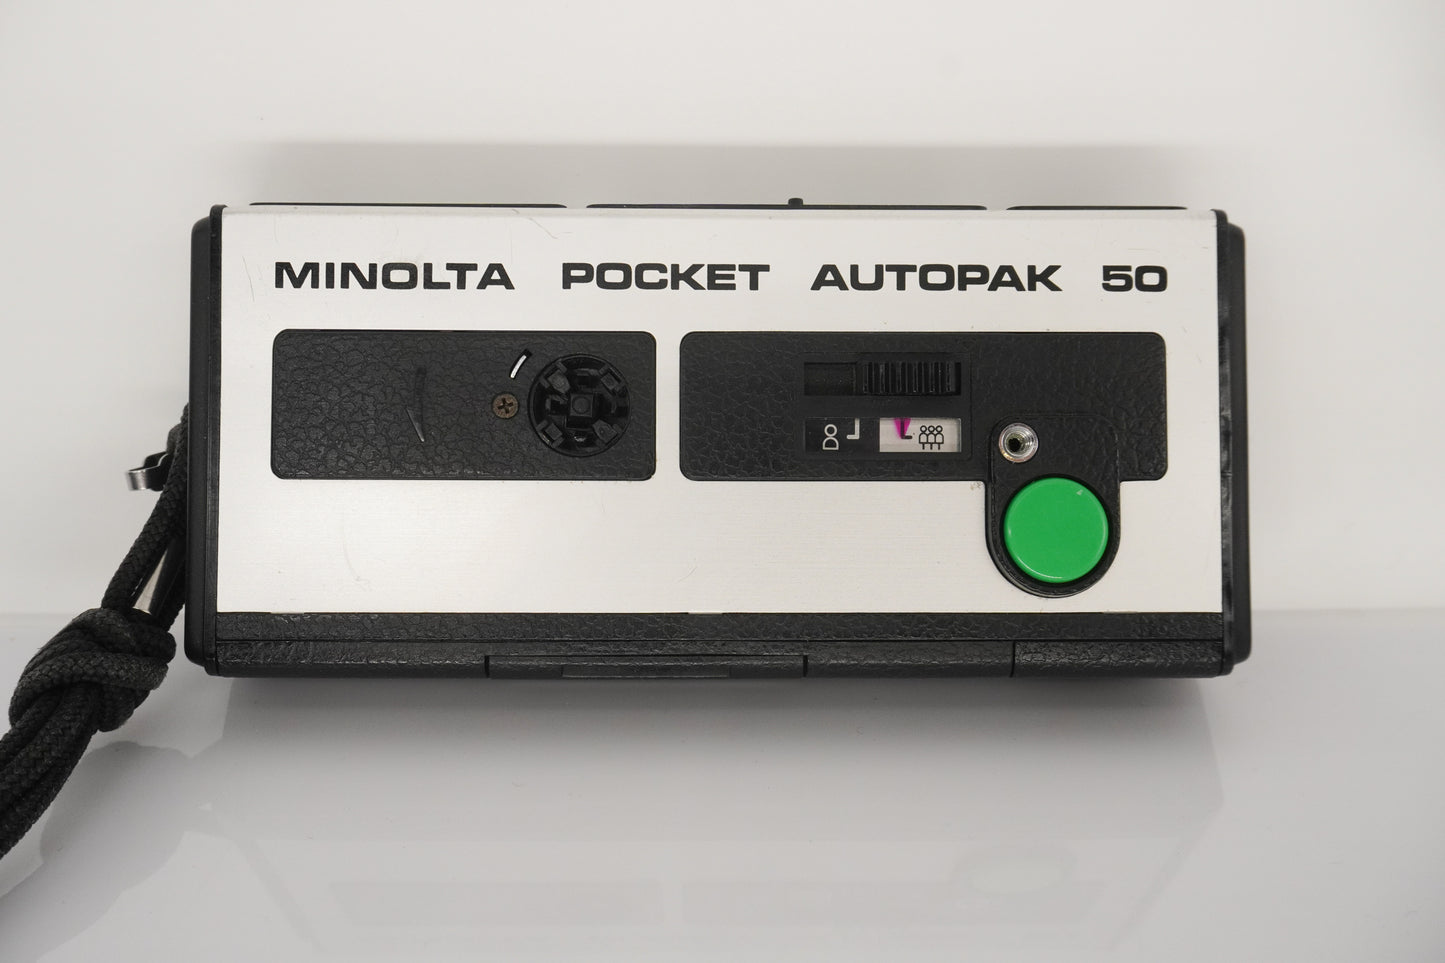 Telechan MK-110 Pocket 110 Film Camera